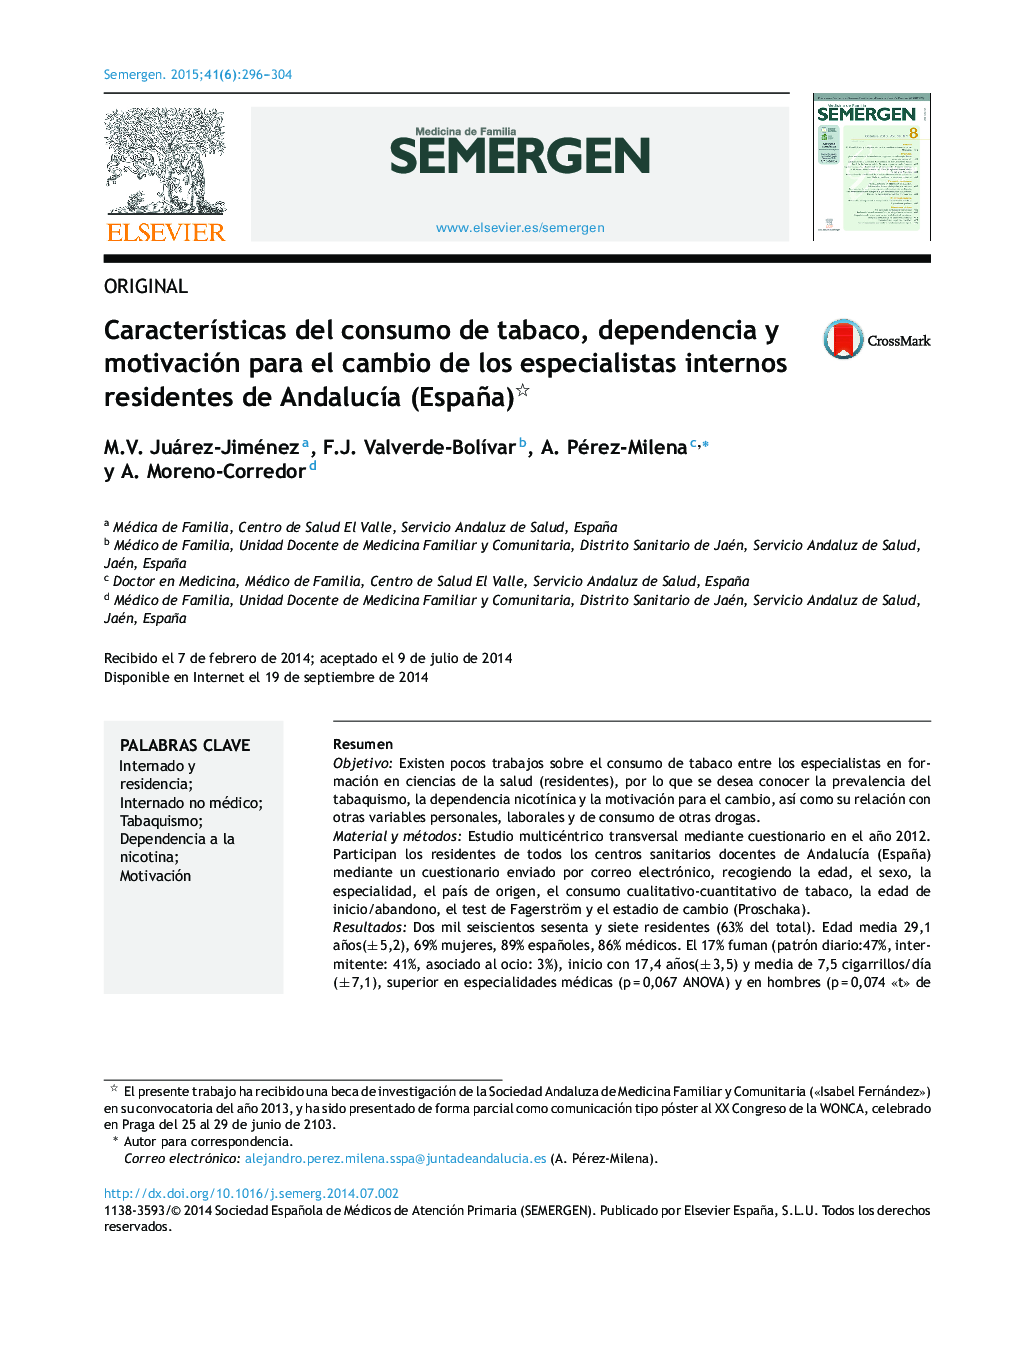 Características del consumo de tabaco, dependencia y motivación para el cambio de los especialistas internos residentes de Andalucía (España) 